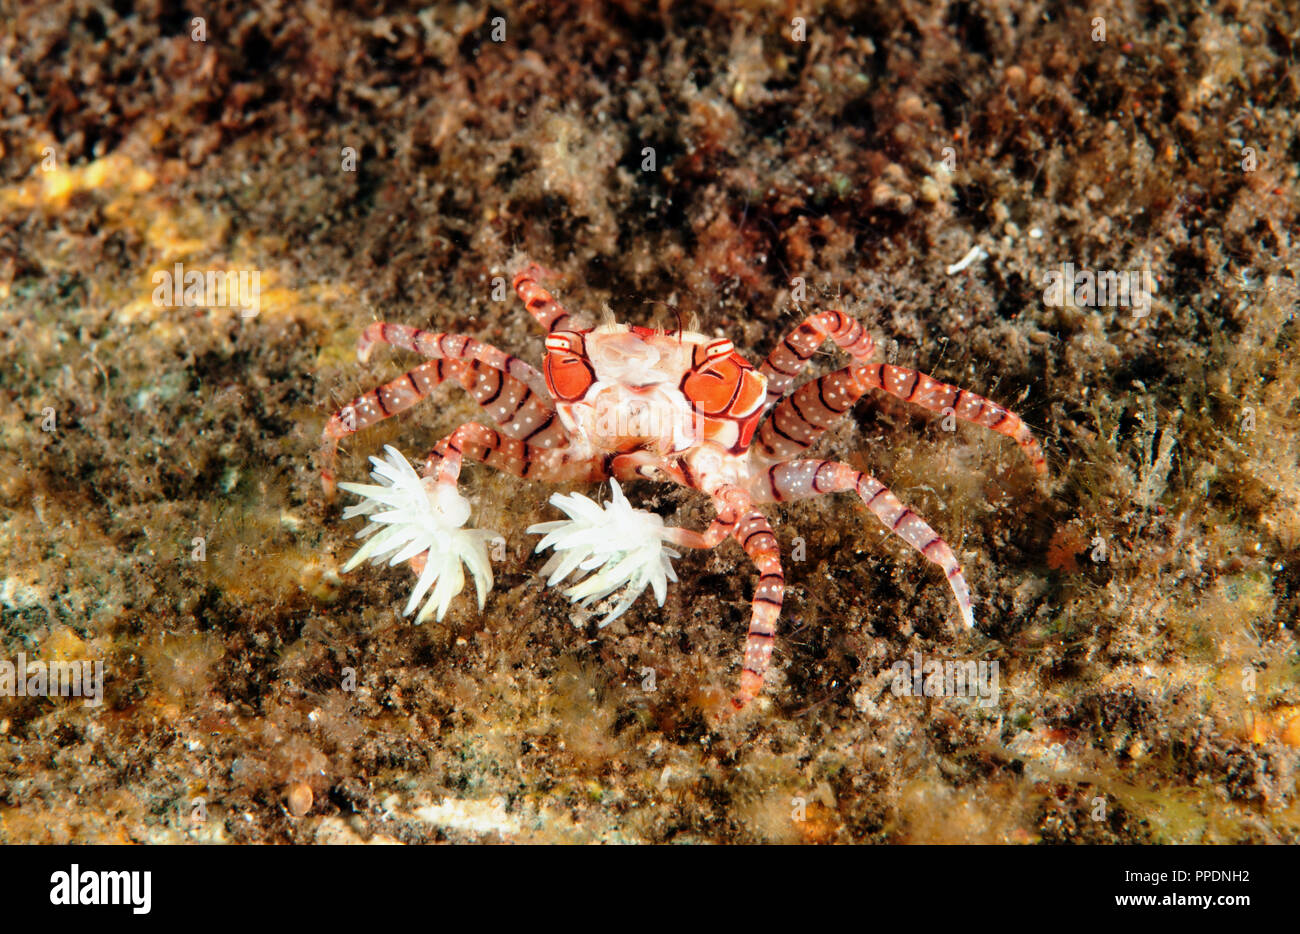 Boxer crab immagini e fotografie stock ad alta risoluzione - Alamy